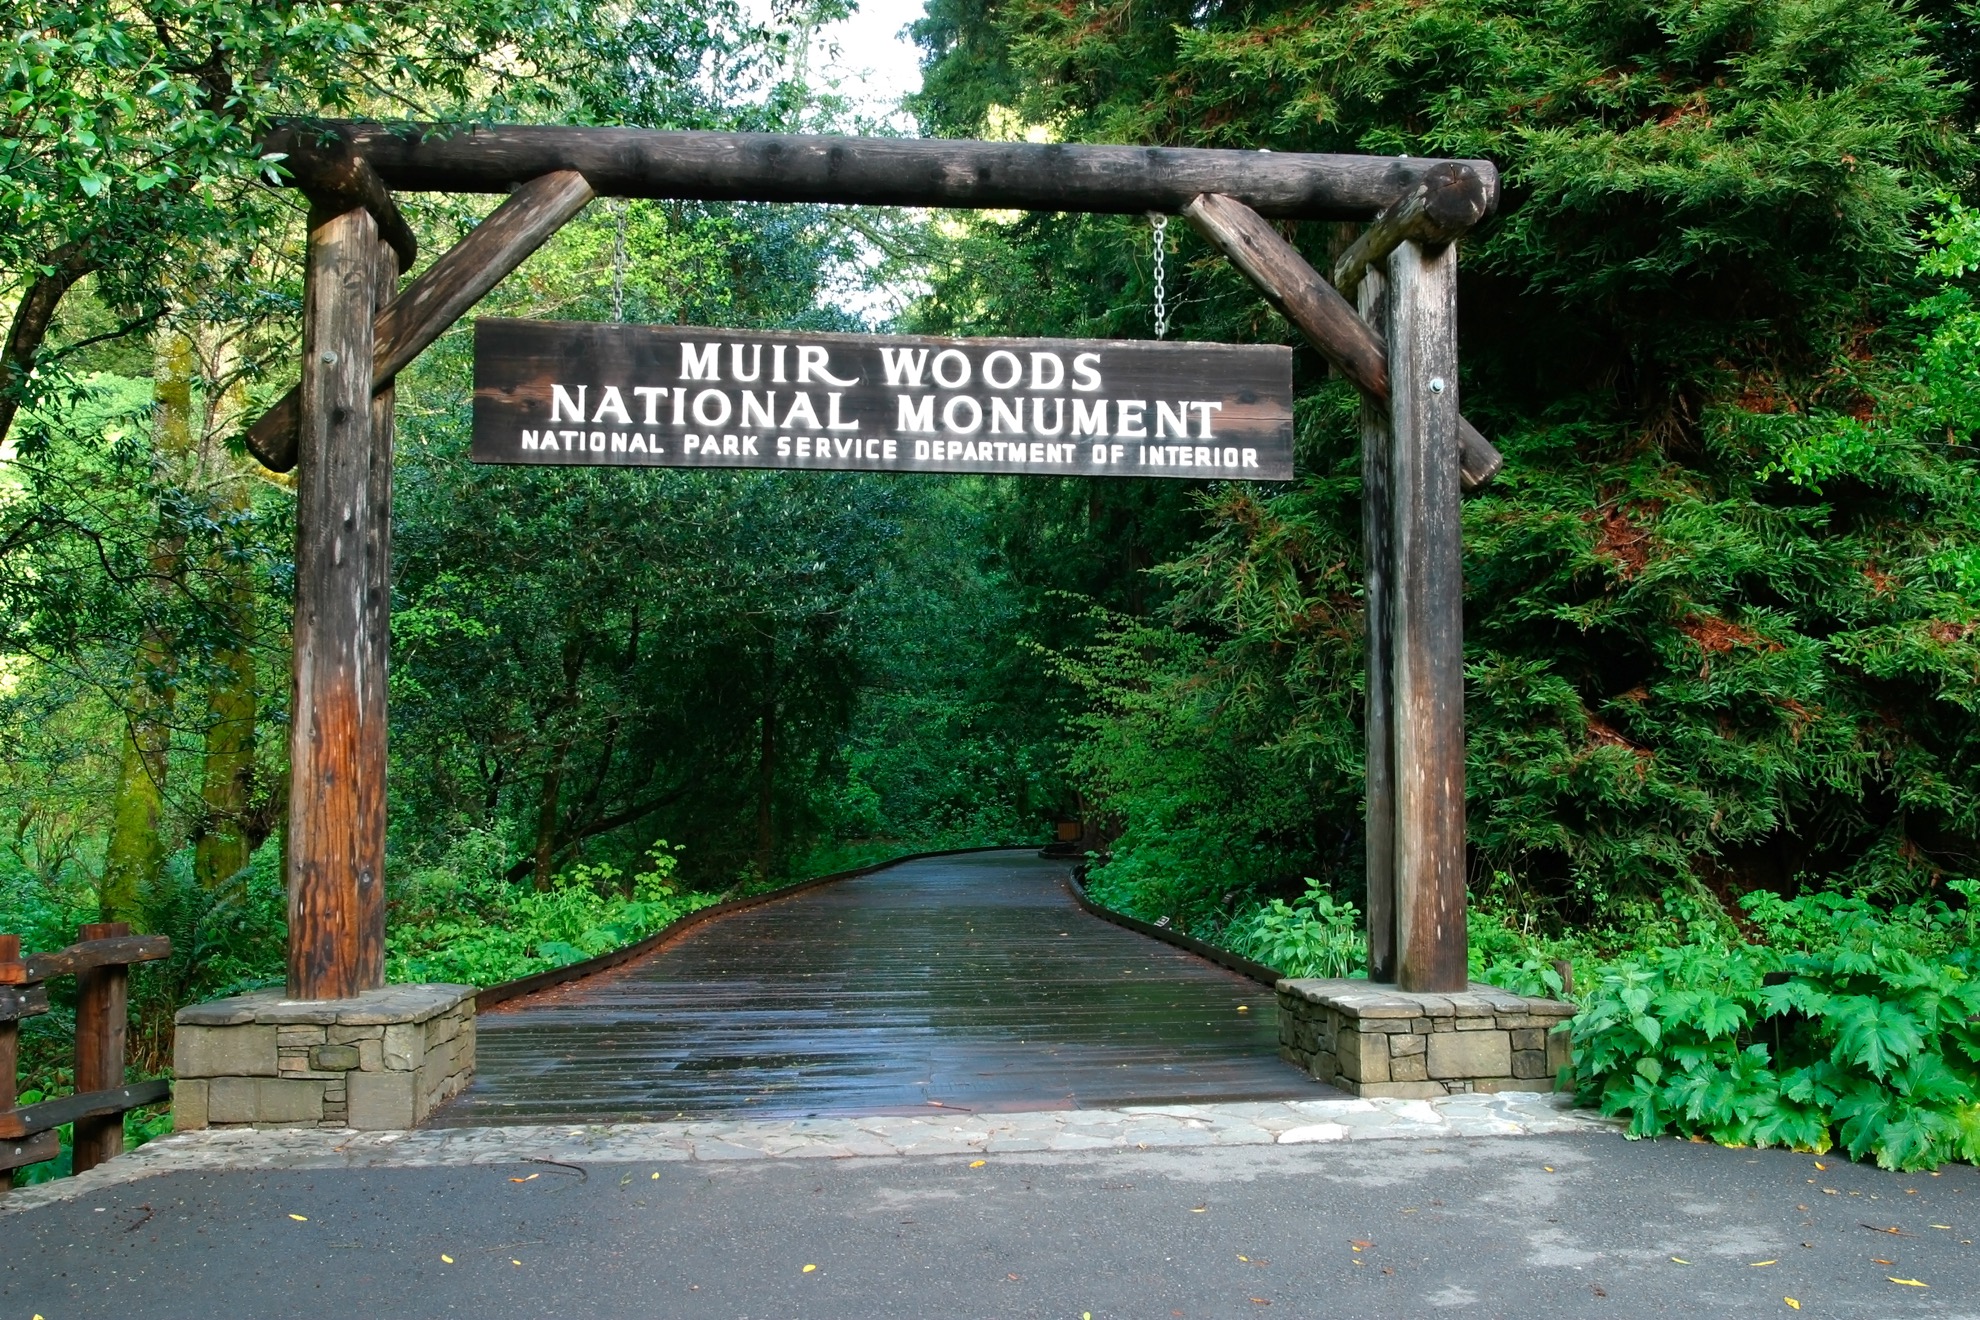 Cómo pasar un día perfecto en el Monumento Nacional Muir Woods - 61